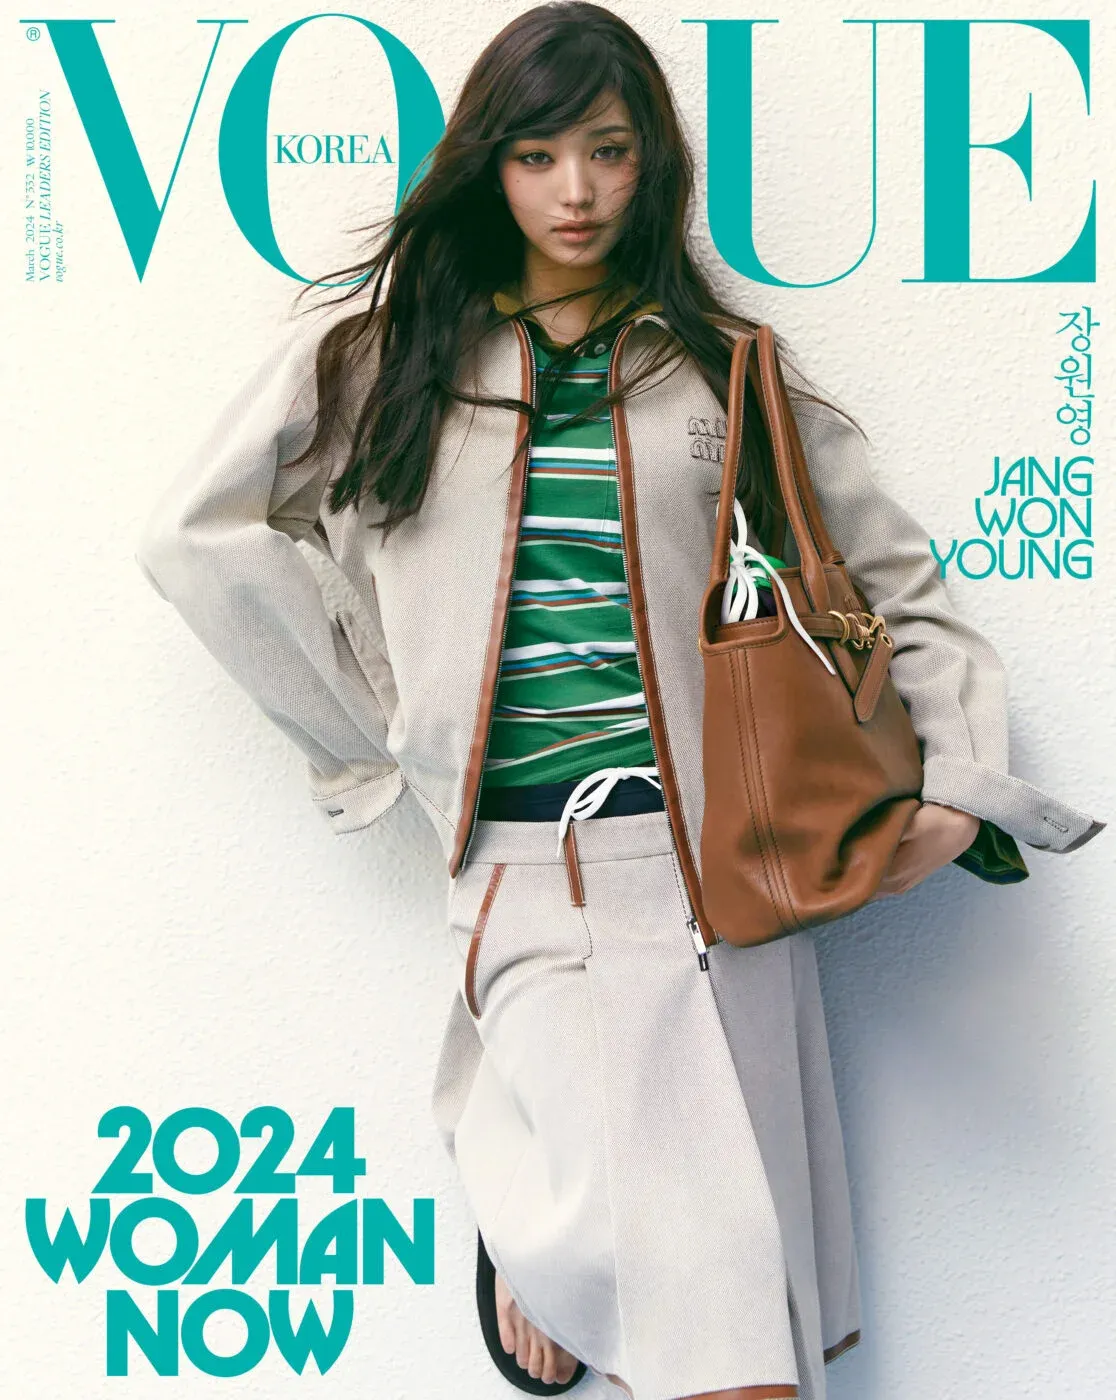 Vogue Coreia escolhe 24 mulheres que representam a geração contemporânea – Aqui estão todos os ídolos do K-Pop selecionados